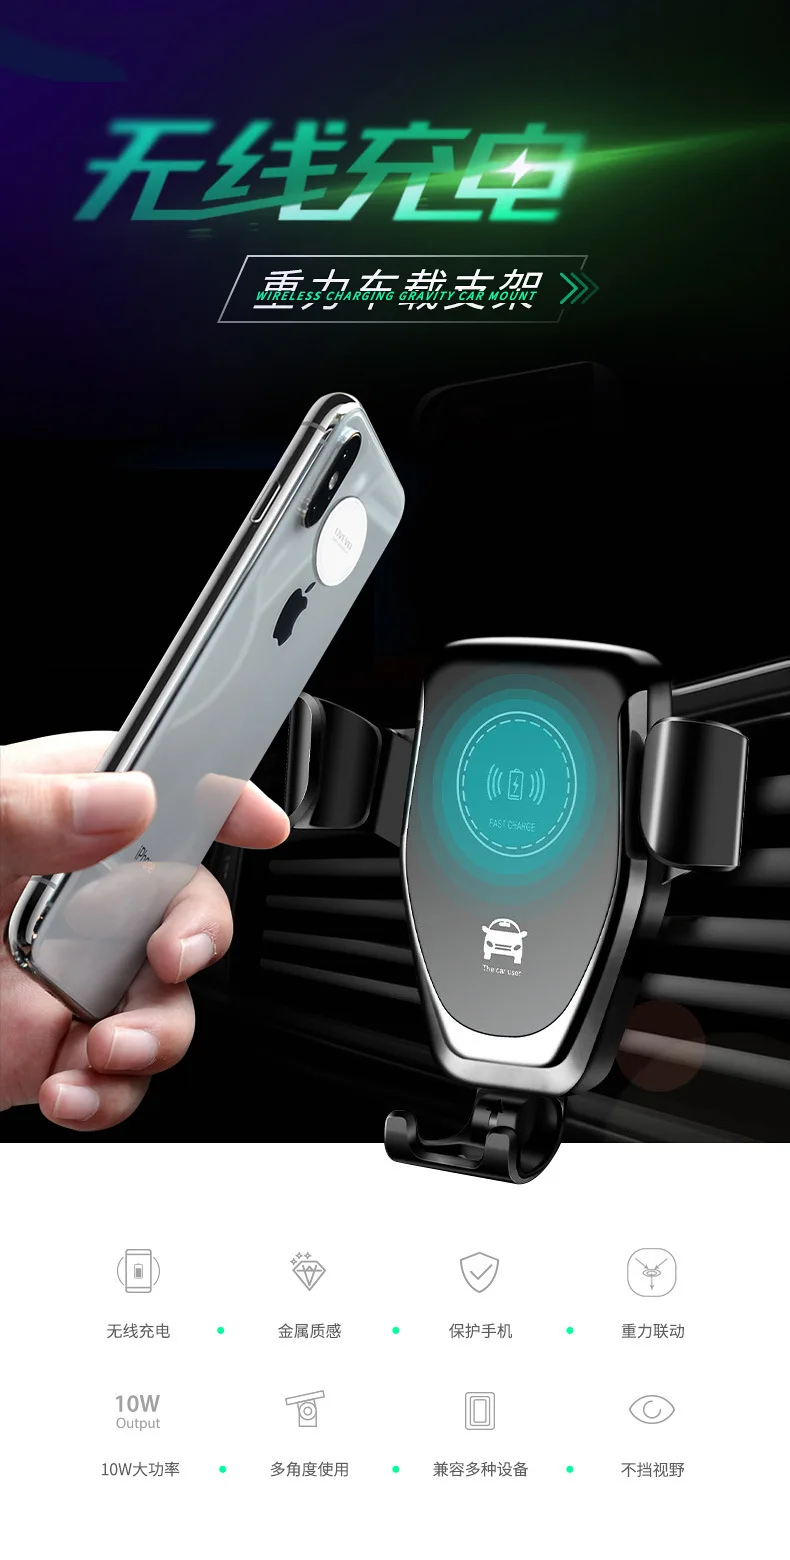 С gps автомобиля Беспроводной Зарядное устройство для iPhone Xs Max XR автомобильный держатель мобильного телефона беспроводной зарядки Автомобильный держатель для телефона на магните для samsung S10 S9